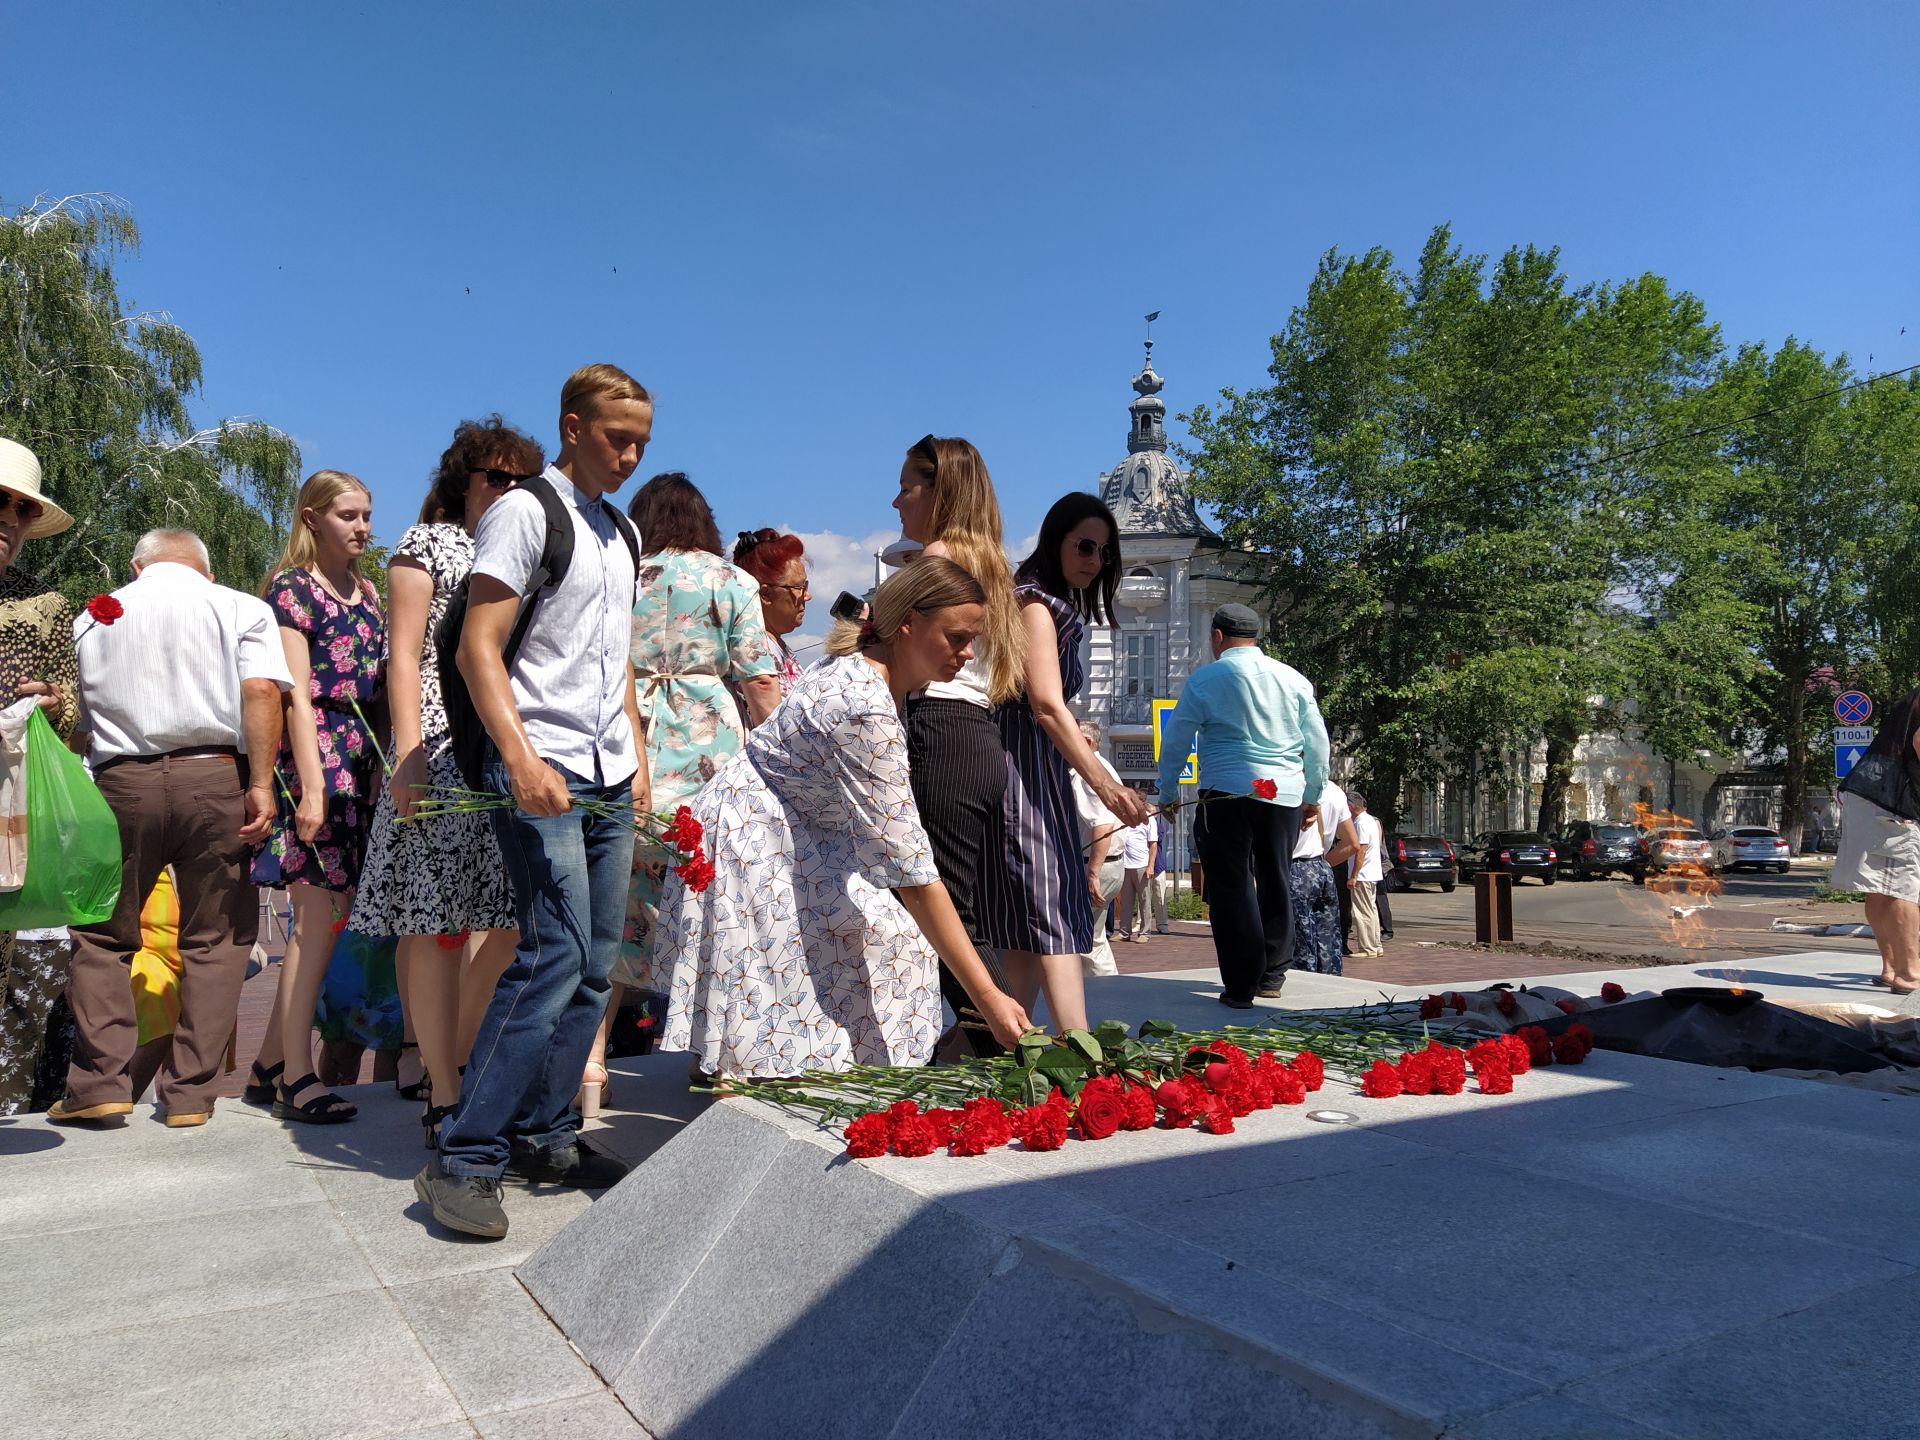 Скорбная дата: в Чистополе почтили память жертв Великой Отечественной